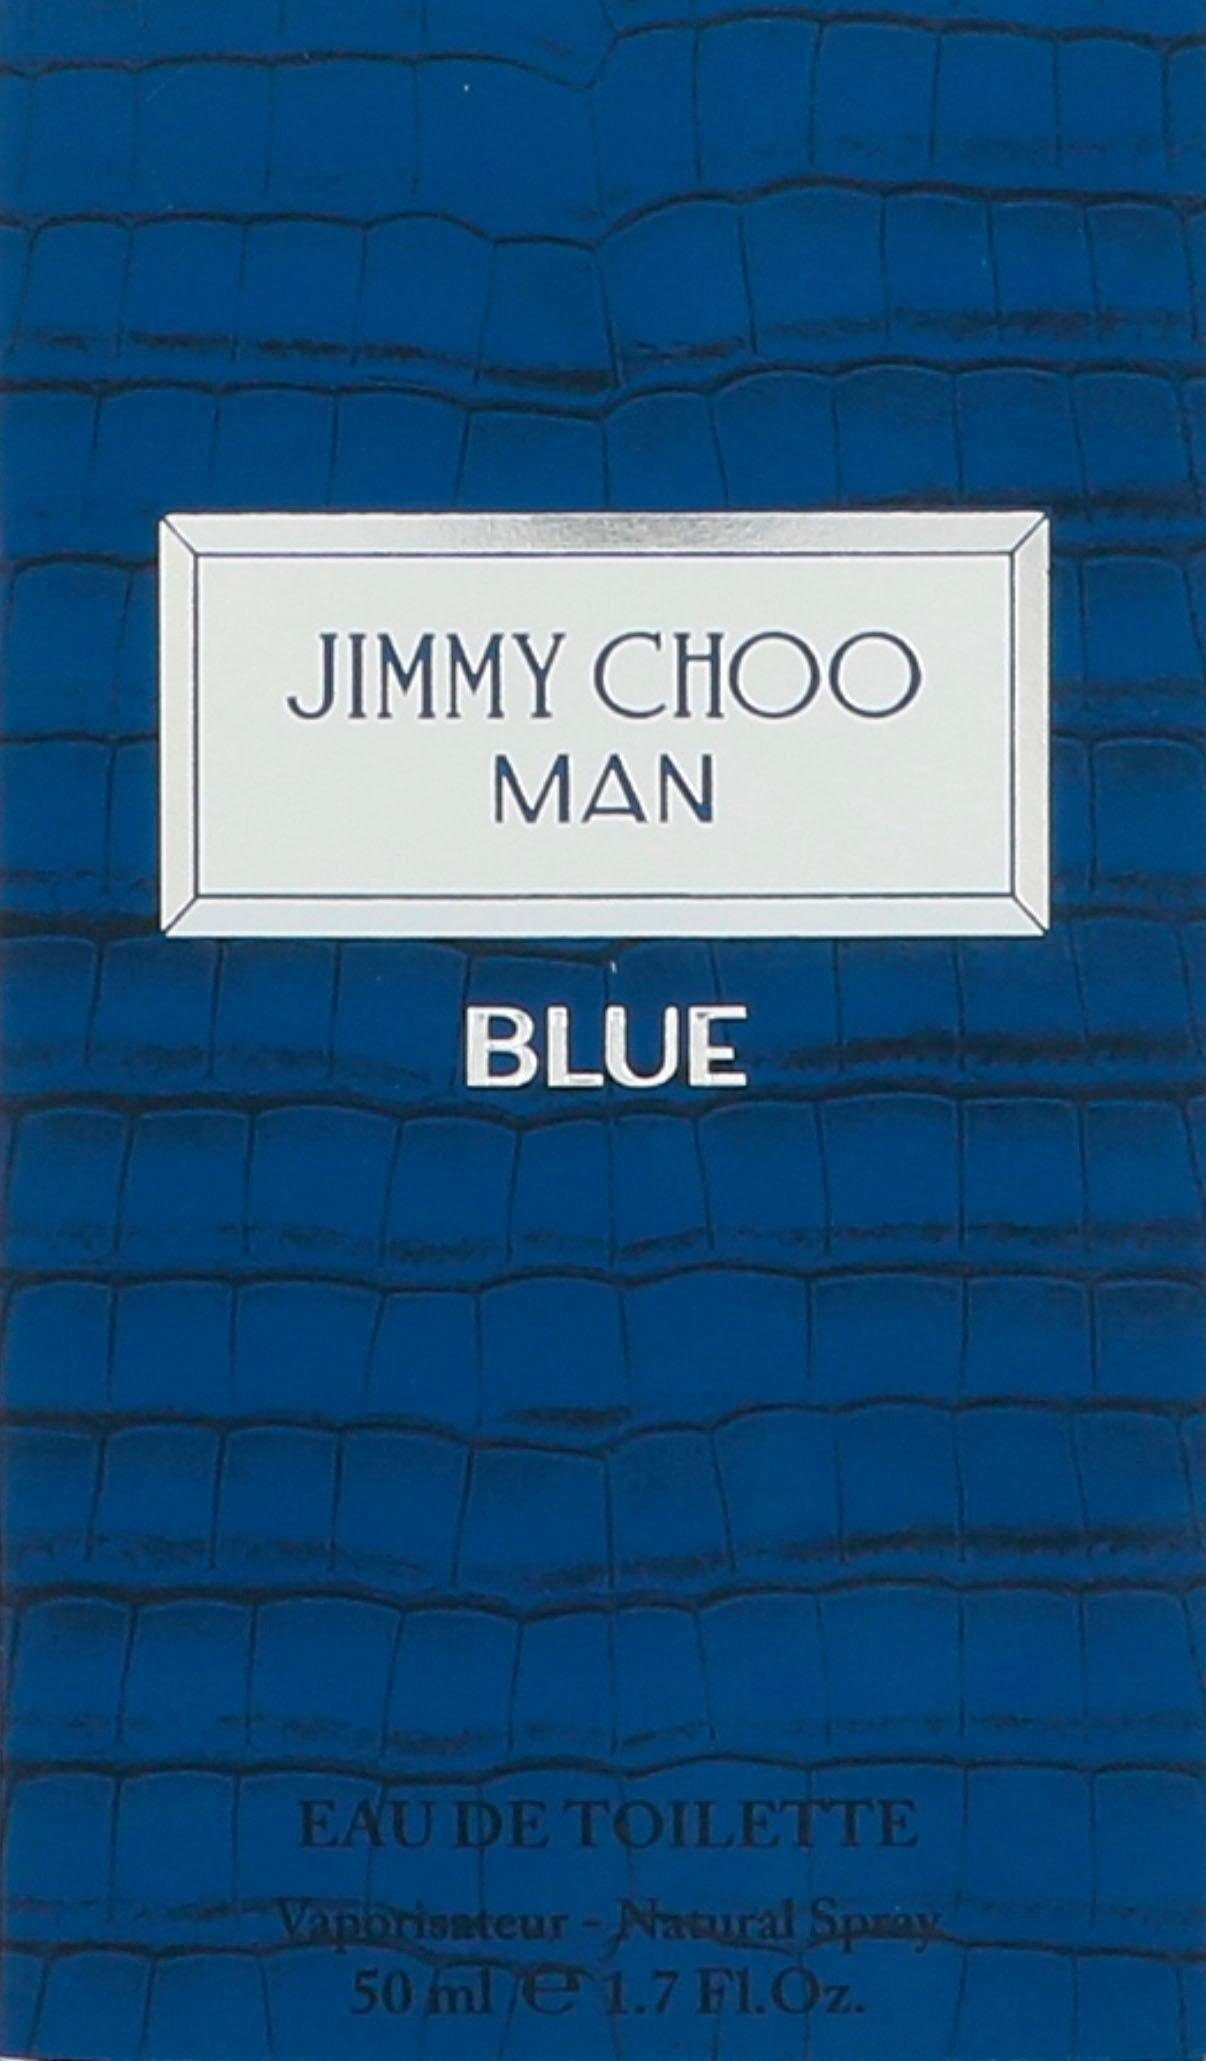 JIMMY CHOO Toilette Eau de Blue Man